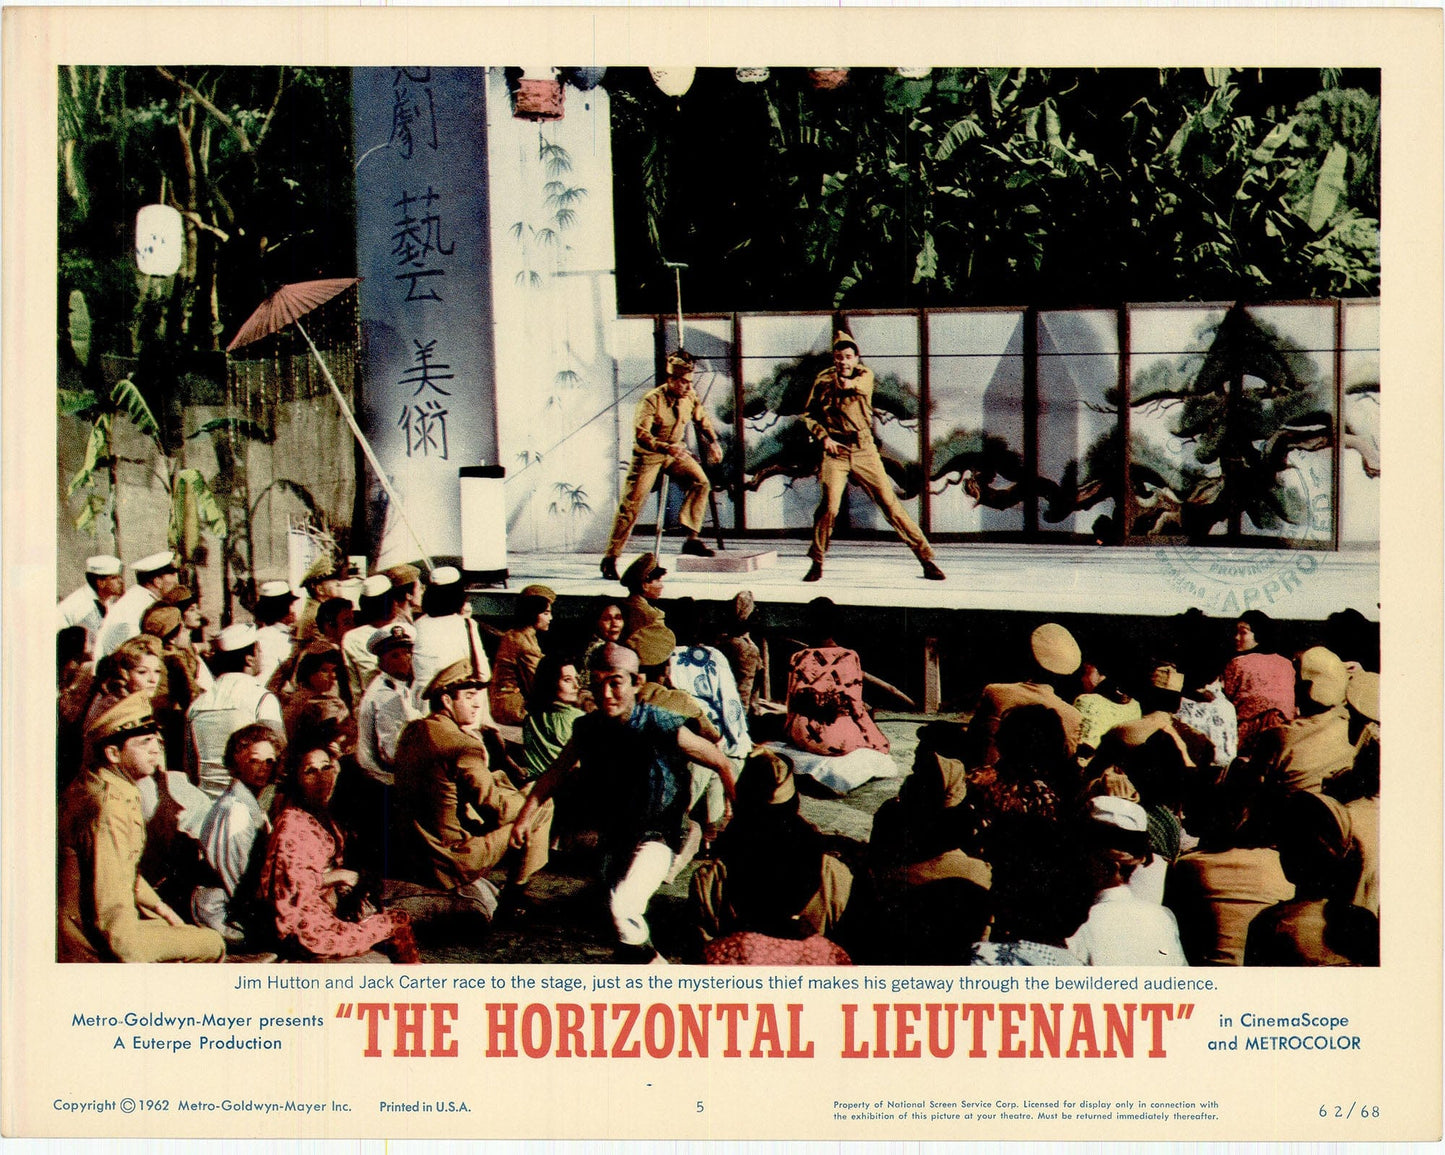 The Horizontal Lieutenant Movie Lobby Card